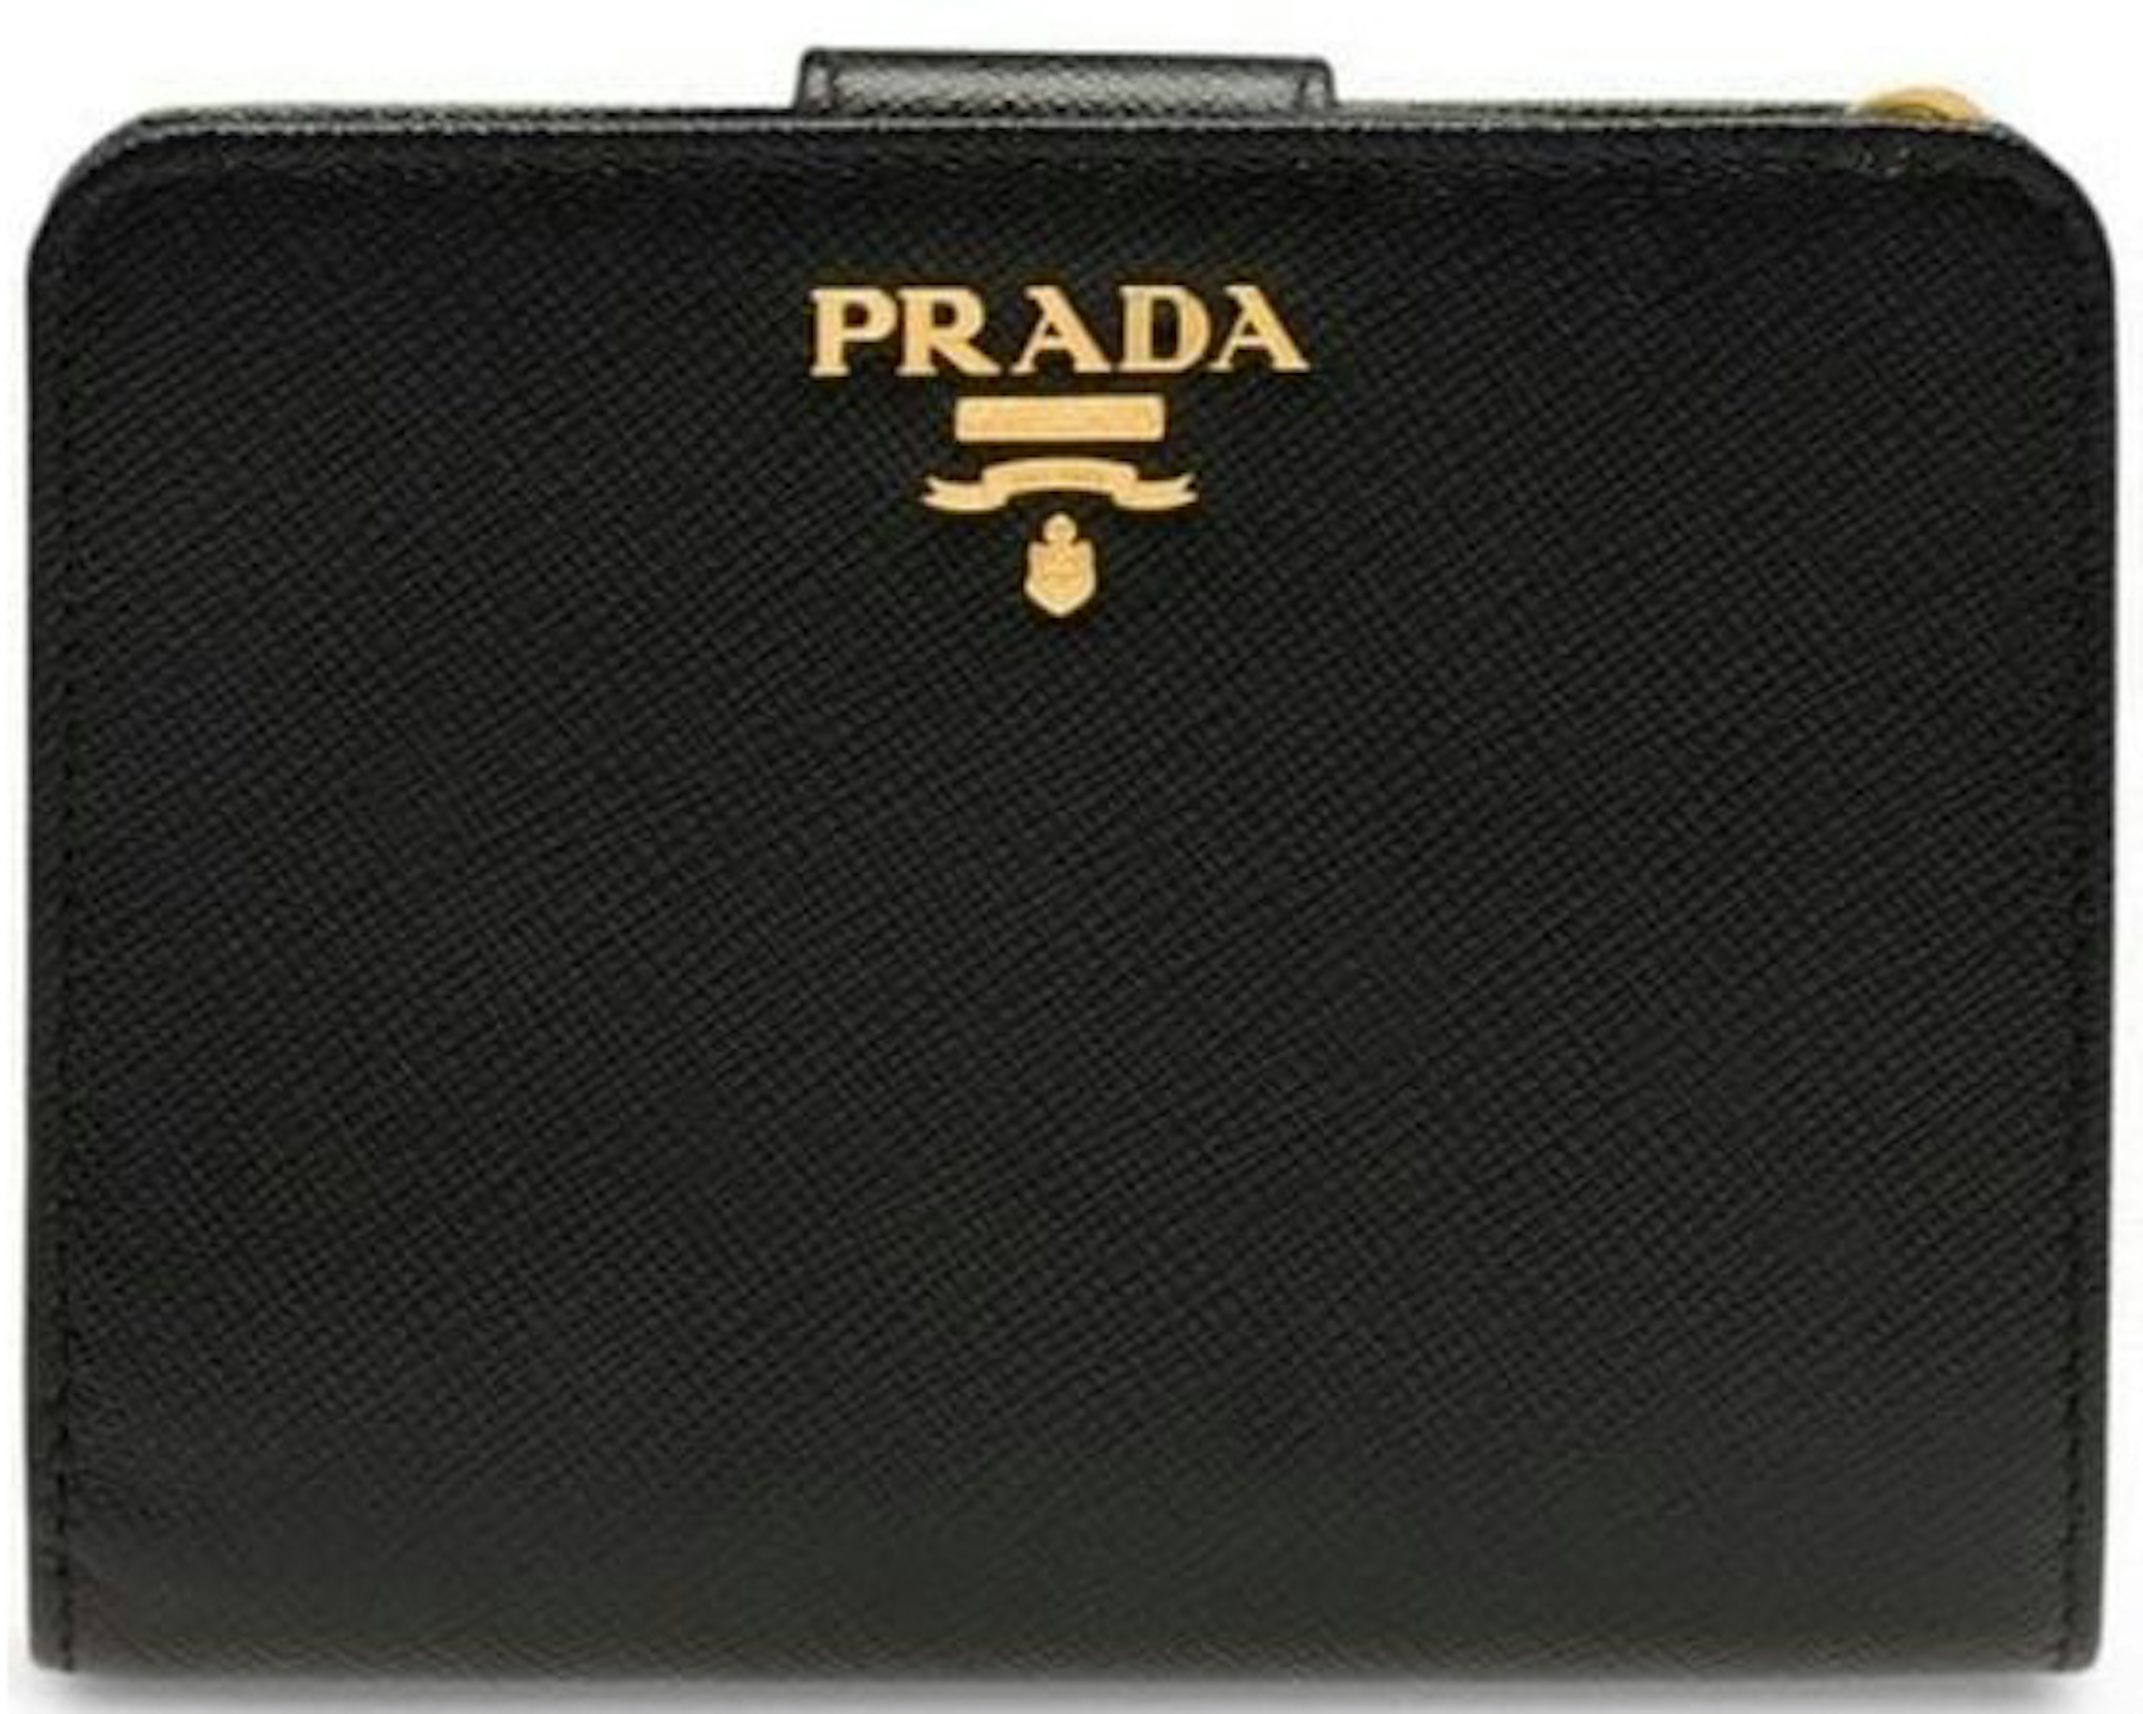 New Prada Cipria Beige Vitello Move Leather Chain Wallet Crossbody